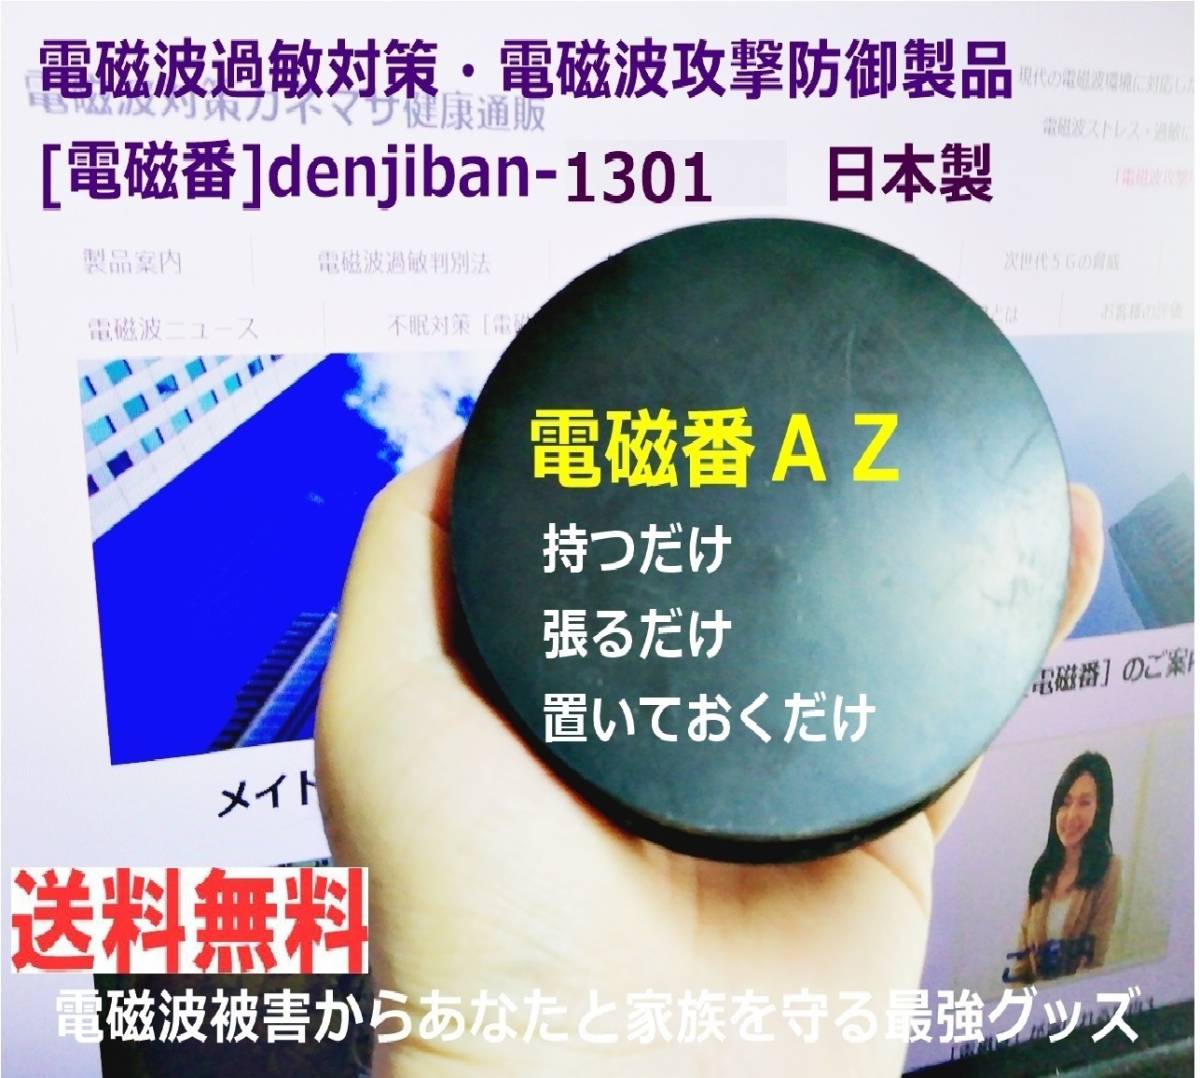 電磁波対策アイテム おすすめ 防止グッズdenjiban-1301「電磁番AZ」5点セット 送料無料